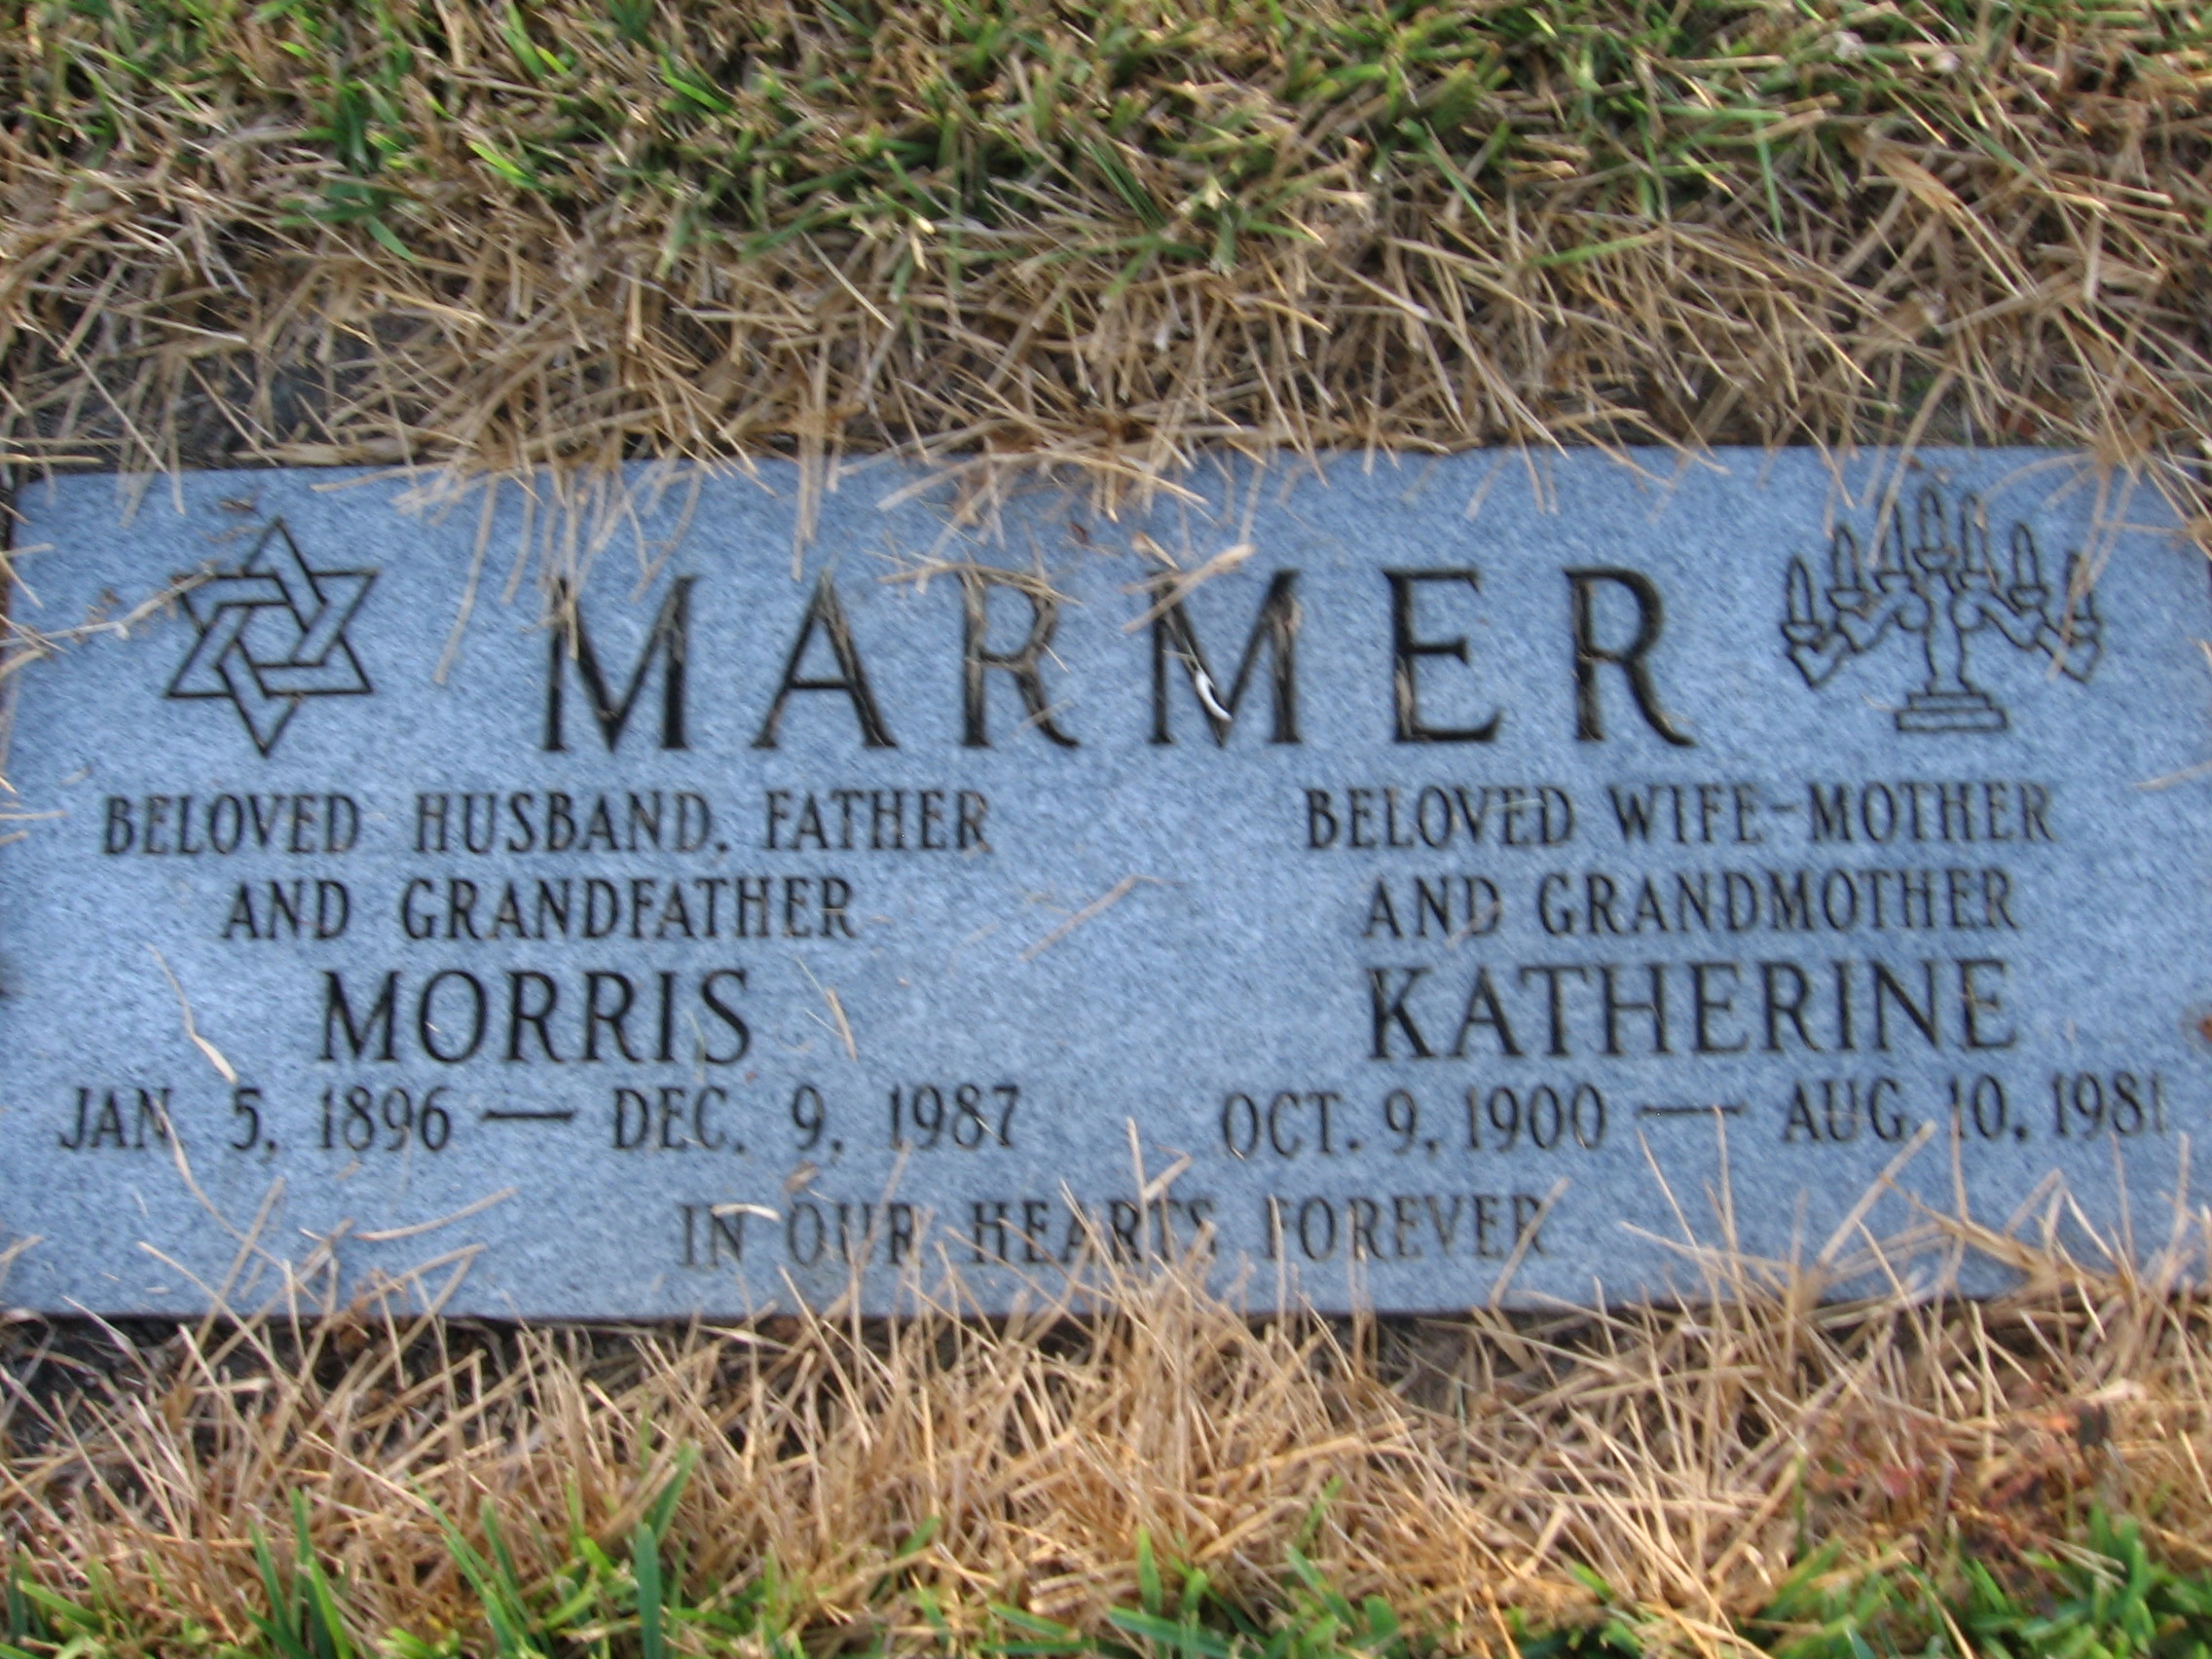 Katherine Marmer